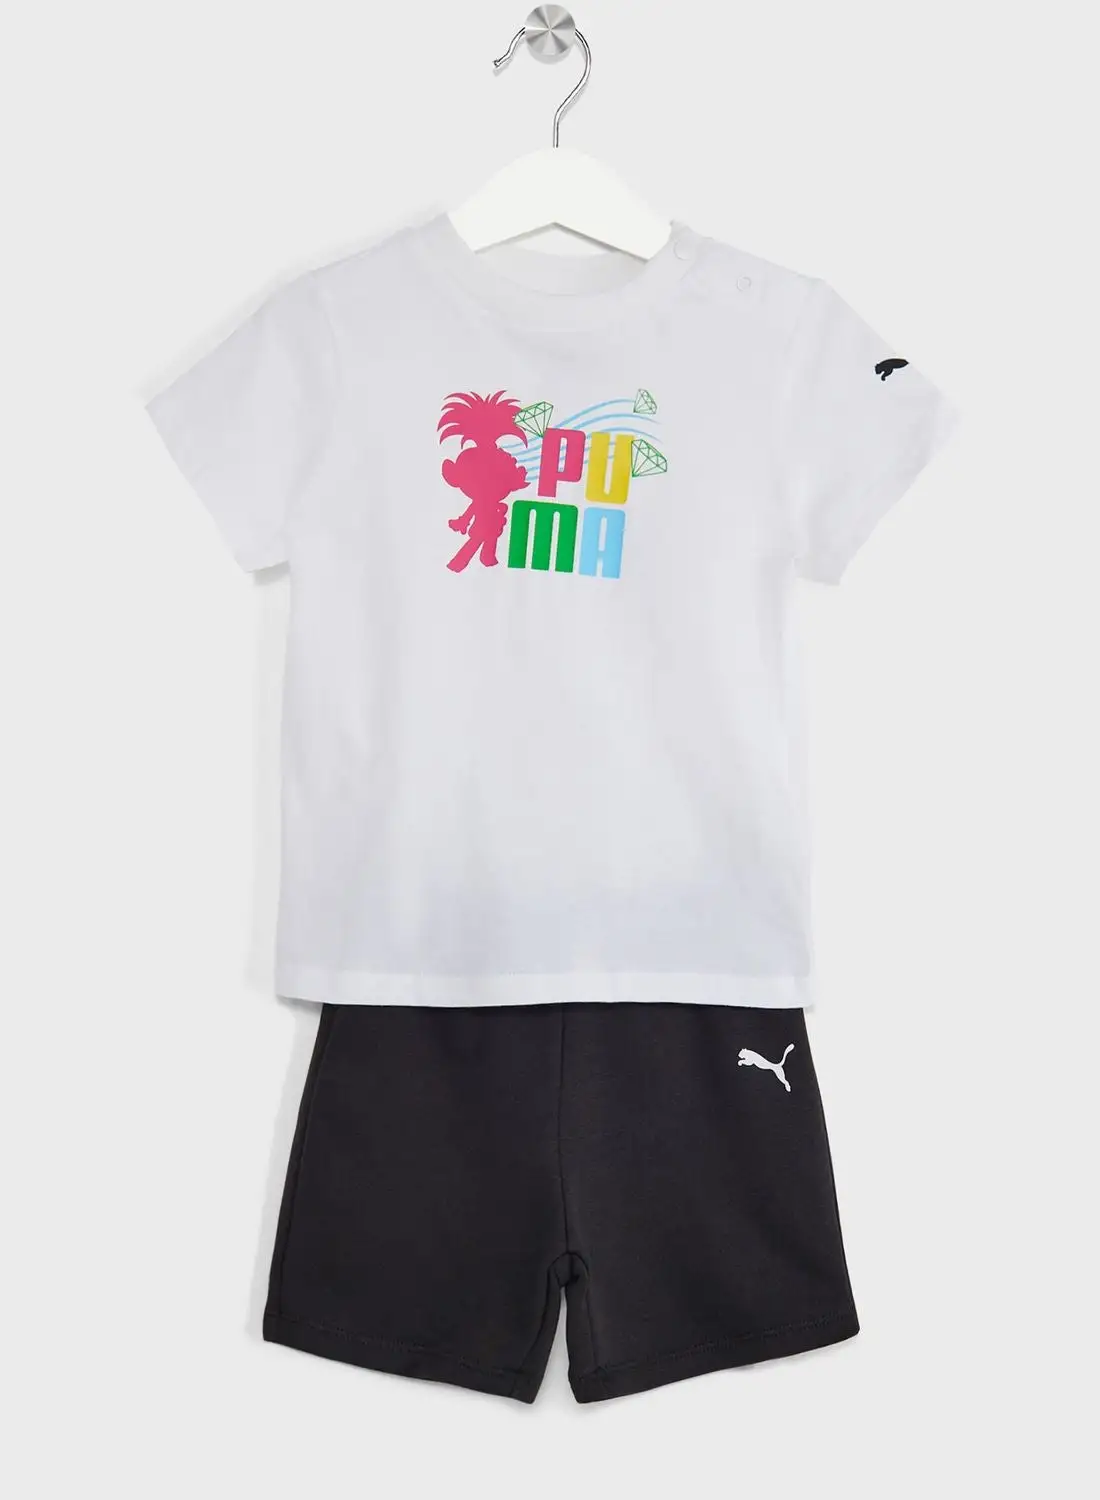 PUMA Kids Trolls Minicat T-Shirt & Shorts Set